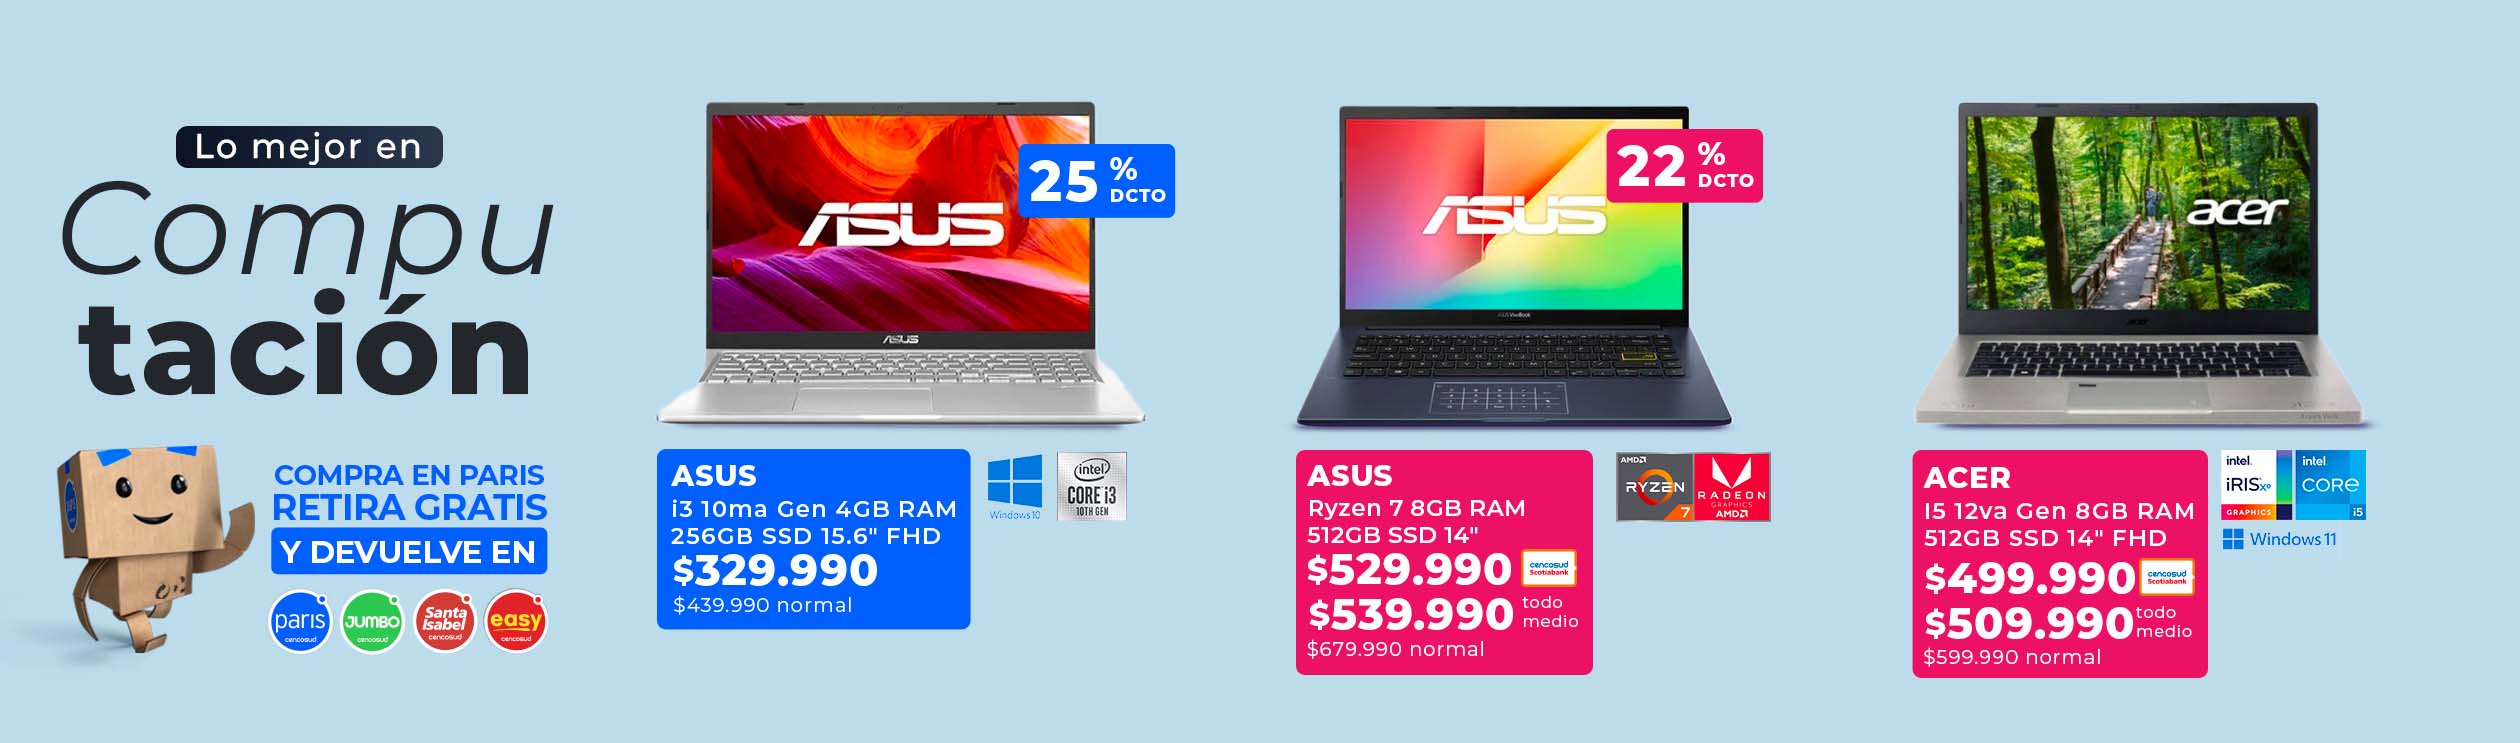 Ver mejores precios en noteboooks Asus y Acer